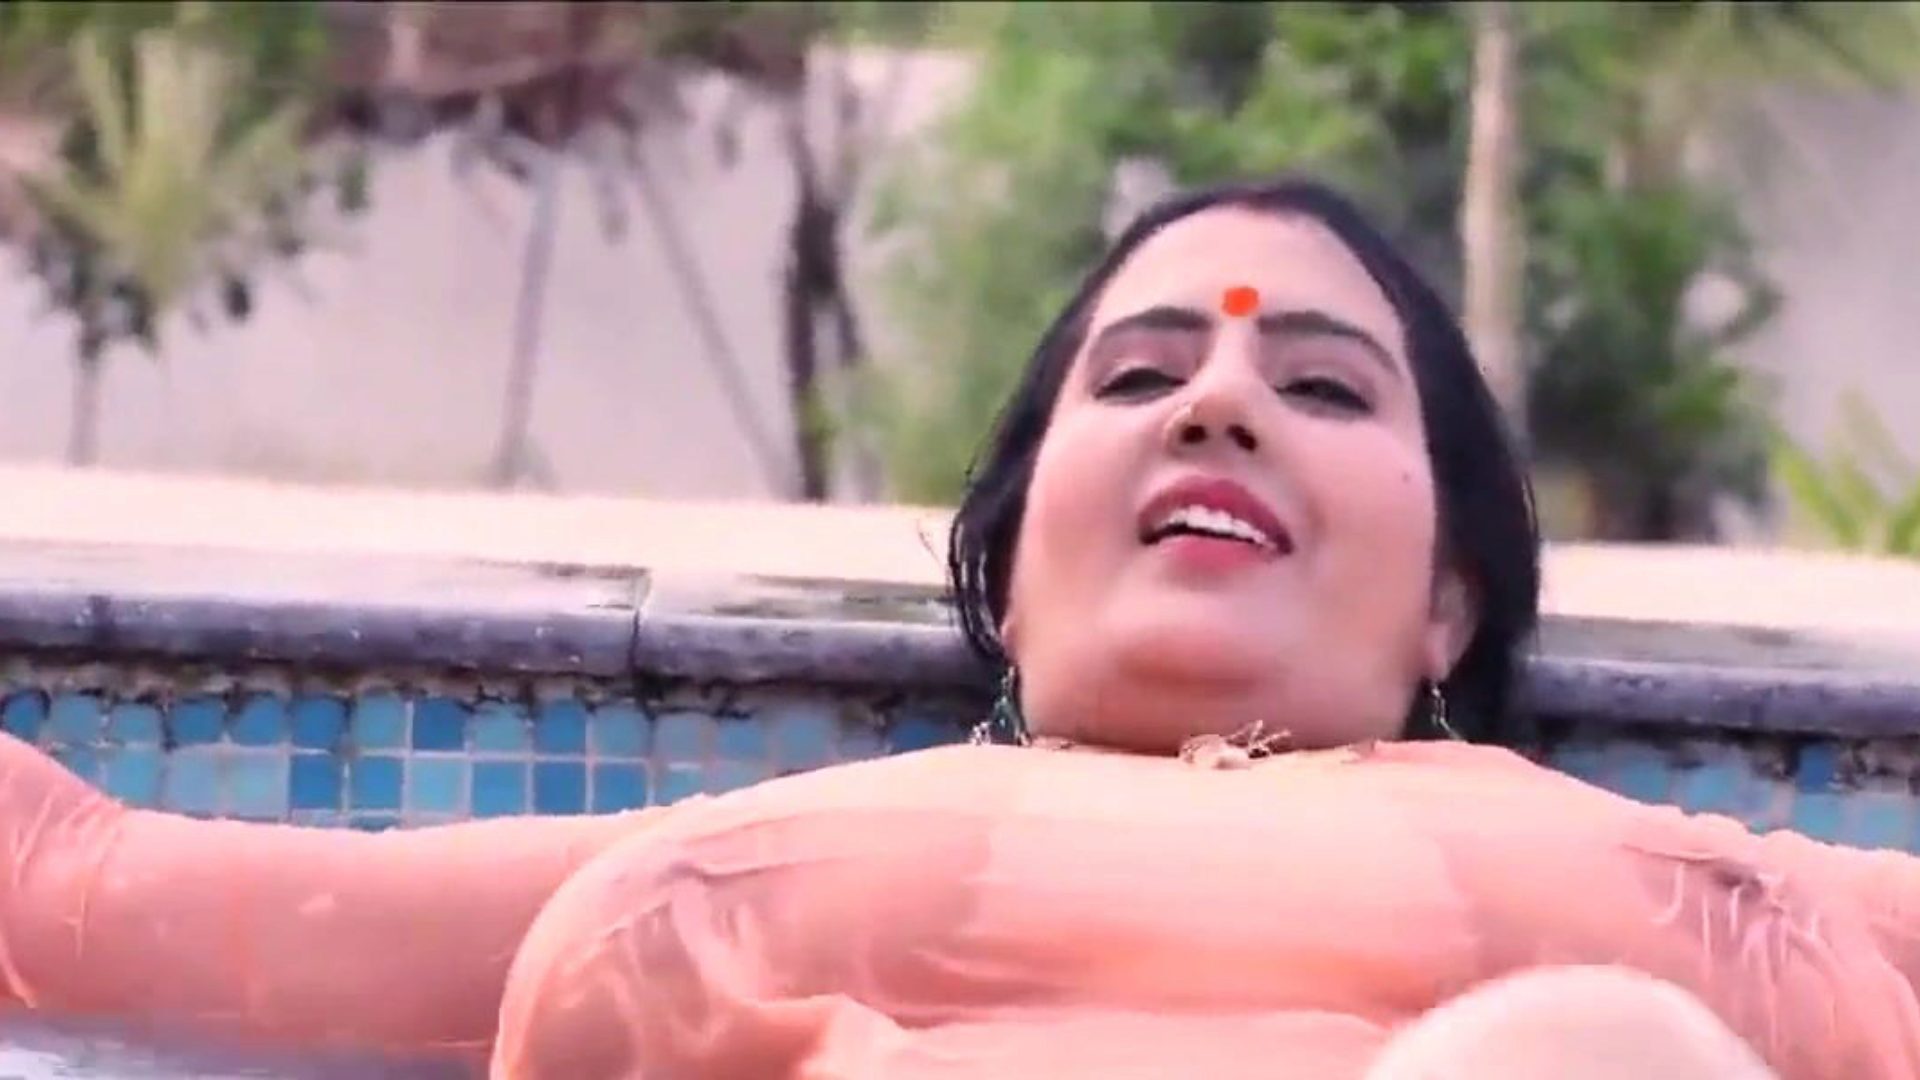 kanchan aunty - e3 - clip 5 porno indien gratuit 30 montre xhamster kanchan aunty - e3 - clip cinq clip sur xhamster, le plus grand site de tube orgie hd avec des tonnes de nouveaux clips porno indiens gratuits xnx & bub